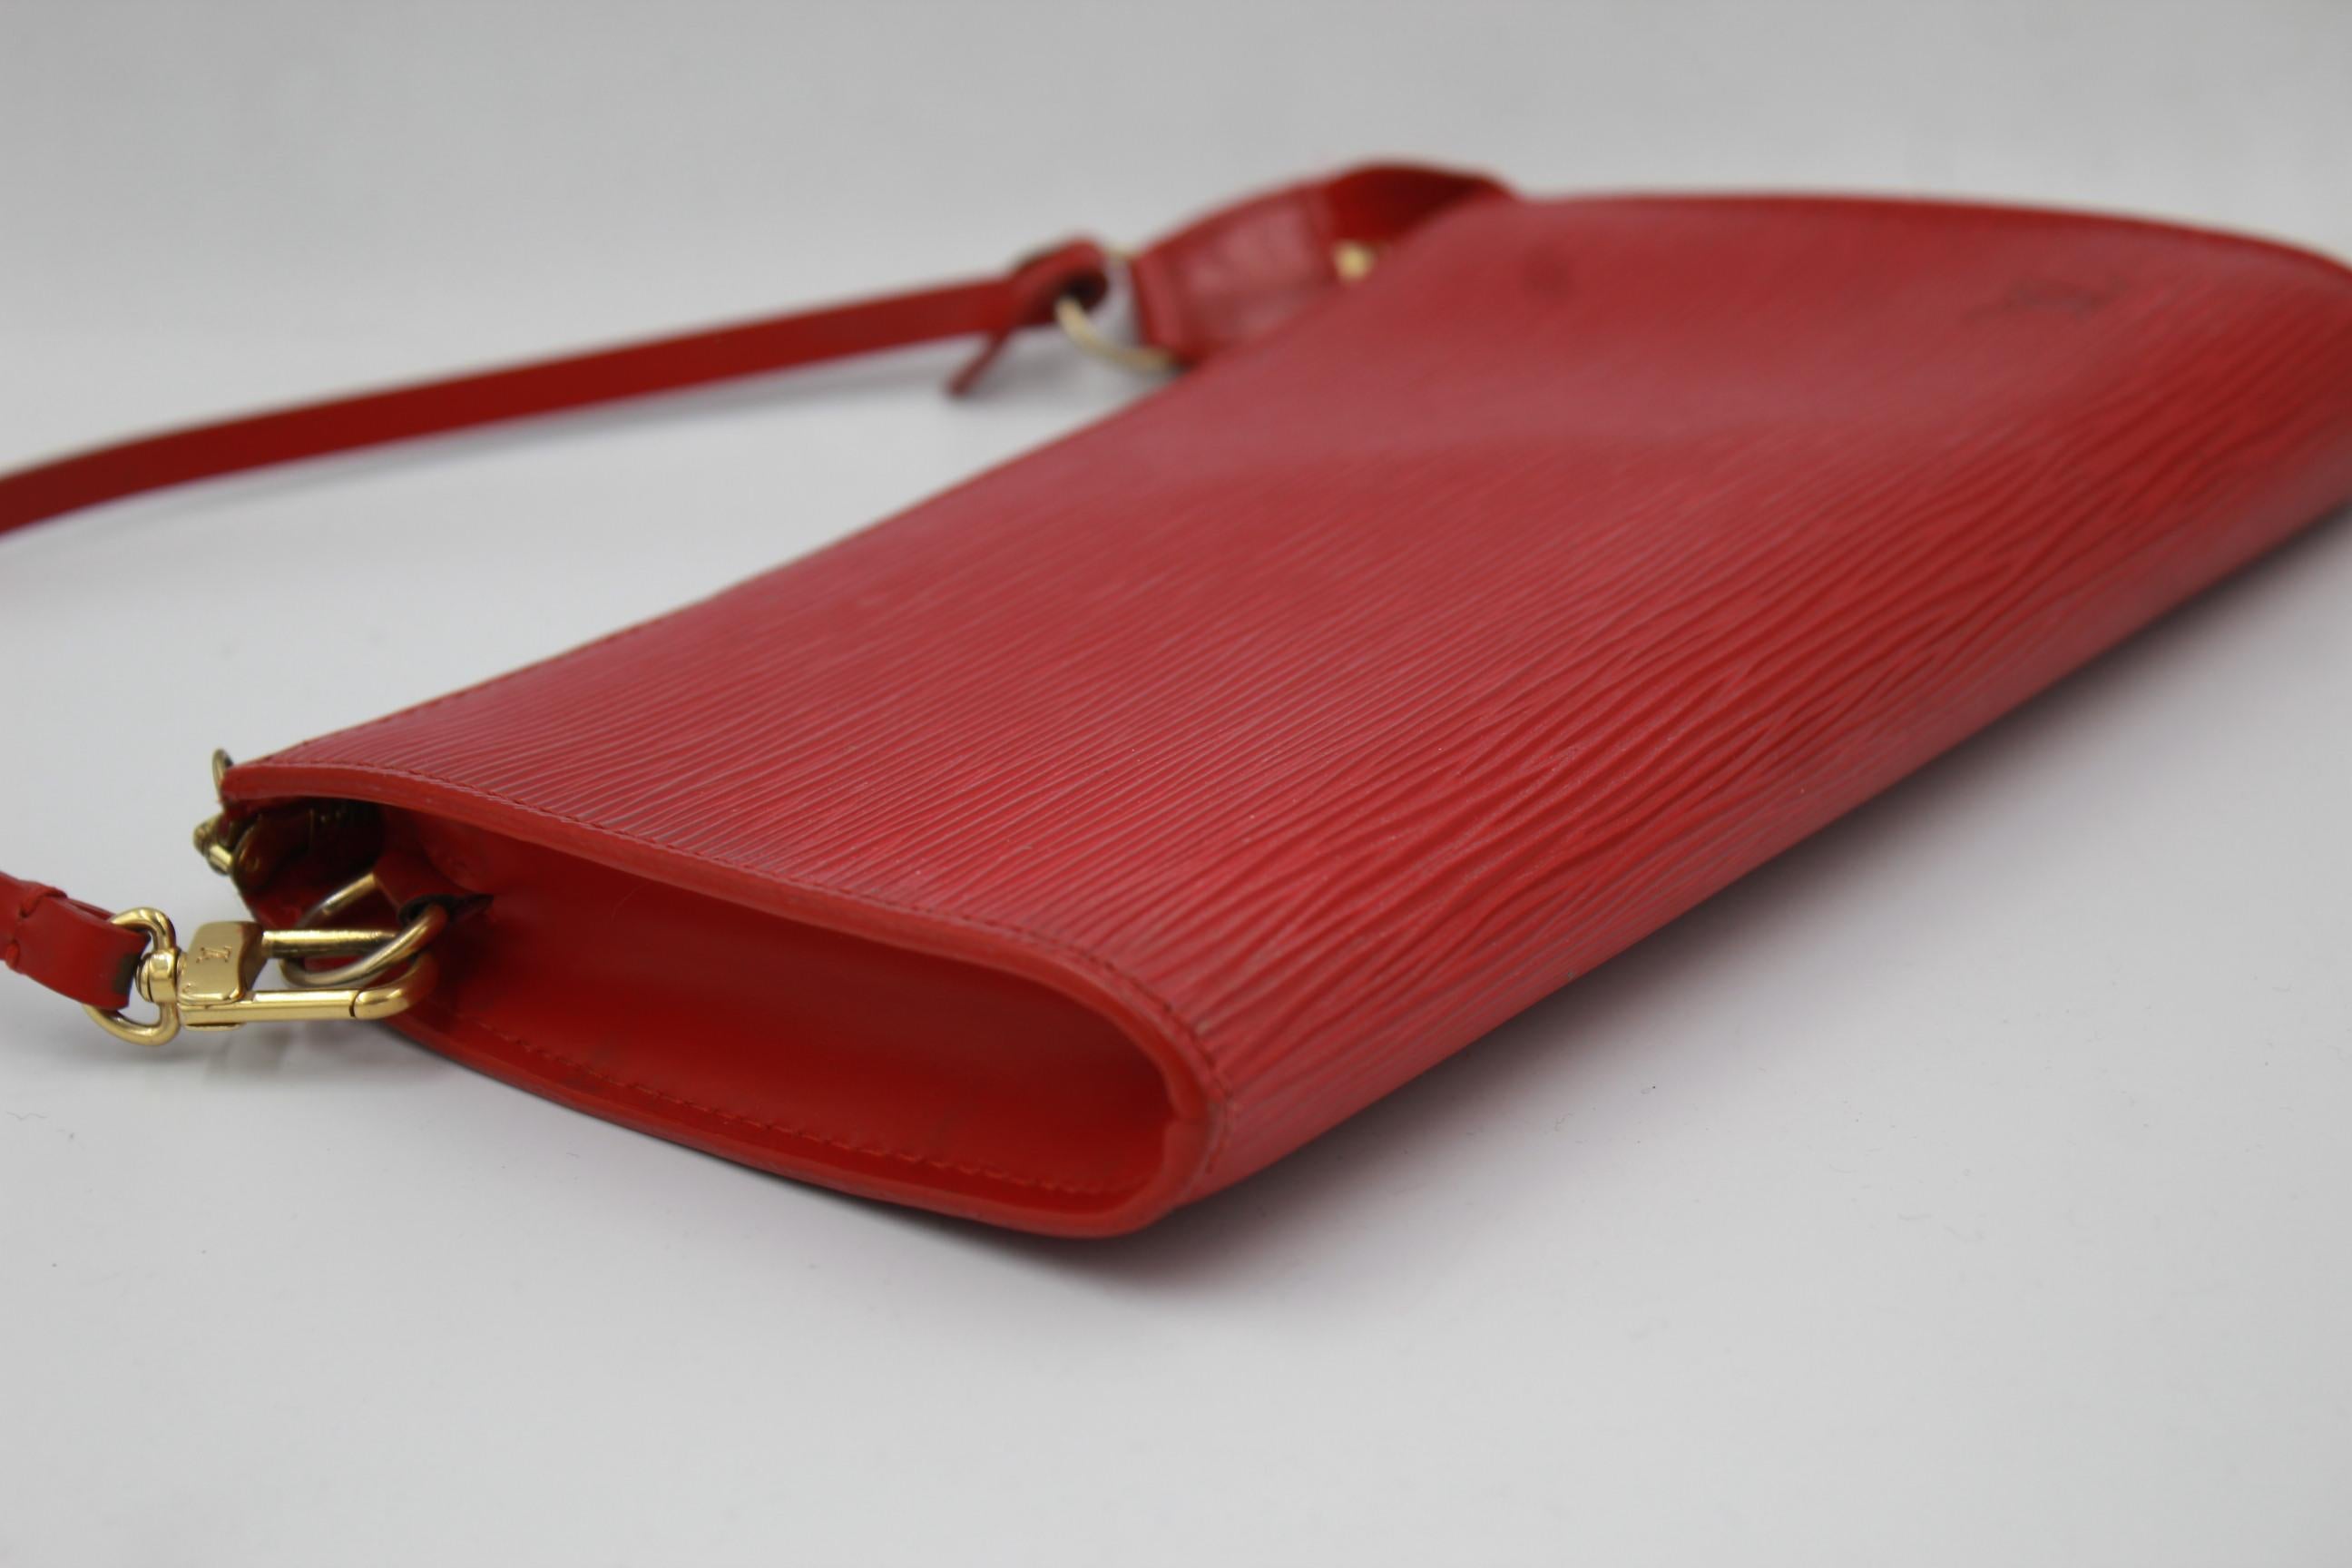 Louis Vuitton Accessoire Clutch in red épi leather
good condition

22cm x 12cm x 3cm